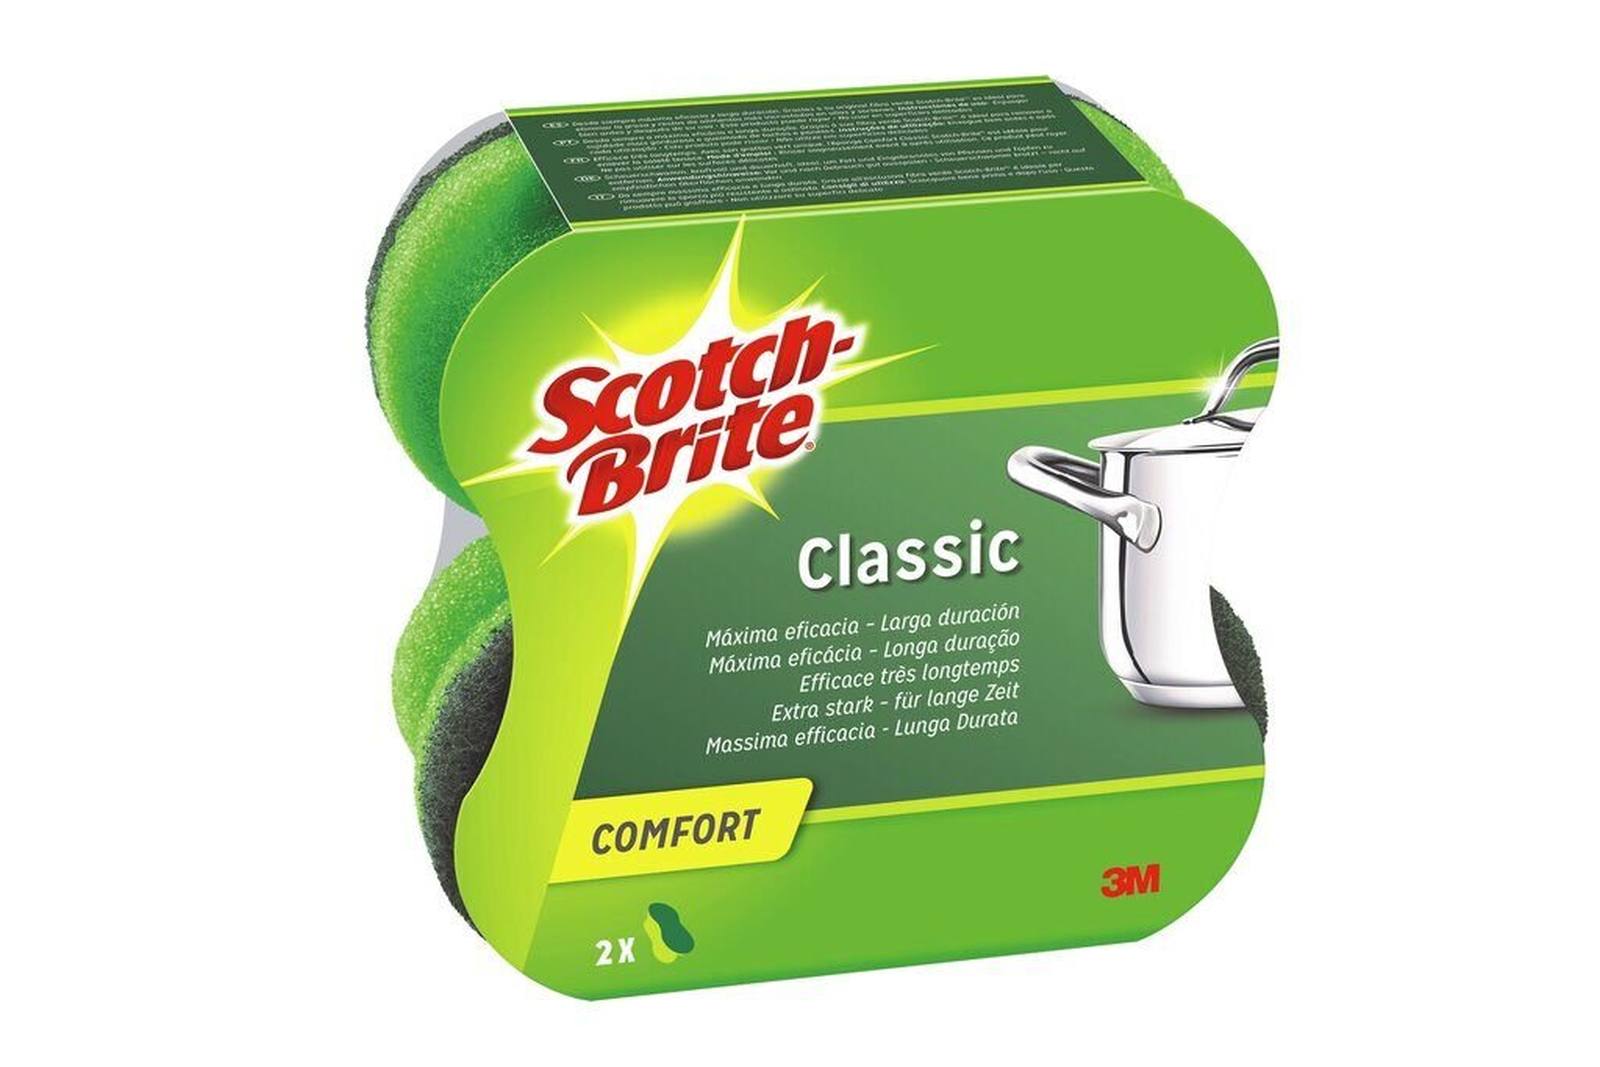 3M Scotch-Brite Classic éponge de nettoyage confort extra forte CLCNS2, vert-vert, 2 pièces